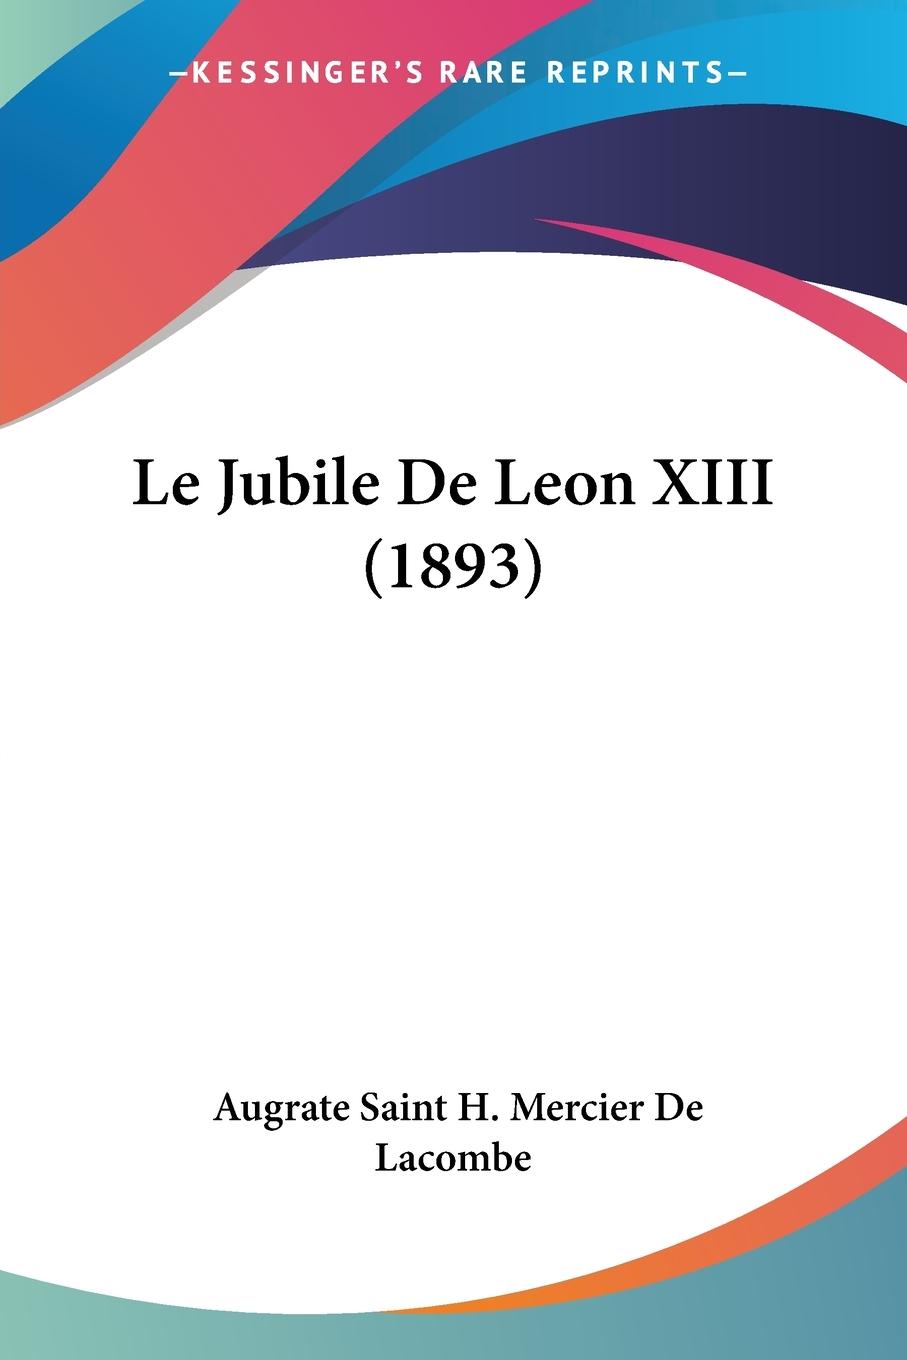 Le Jubile De Leon XIII (1893) - De Lacombe, Augrate Saint H. Mercier